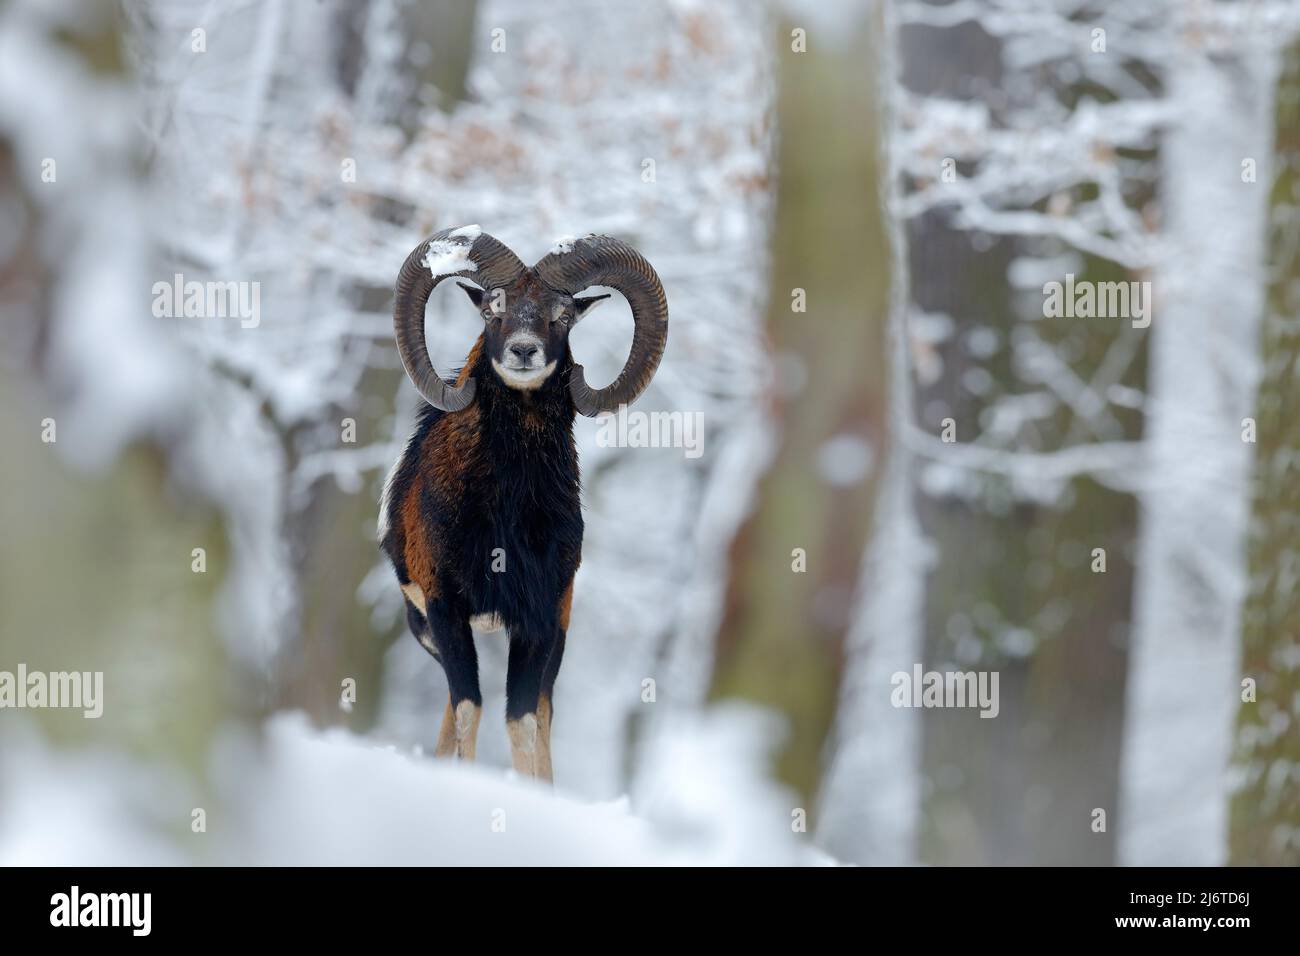 Mouflon, Ovis orientalis, scène d'hiver avec neige dans la forêt, animal corné dans l'habitat naturel, portrait de mammifère avec grande corne, Praha, Tchèque Re Banque D'Images